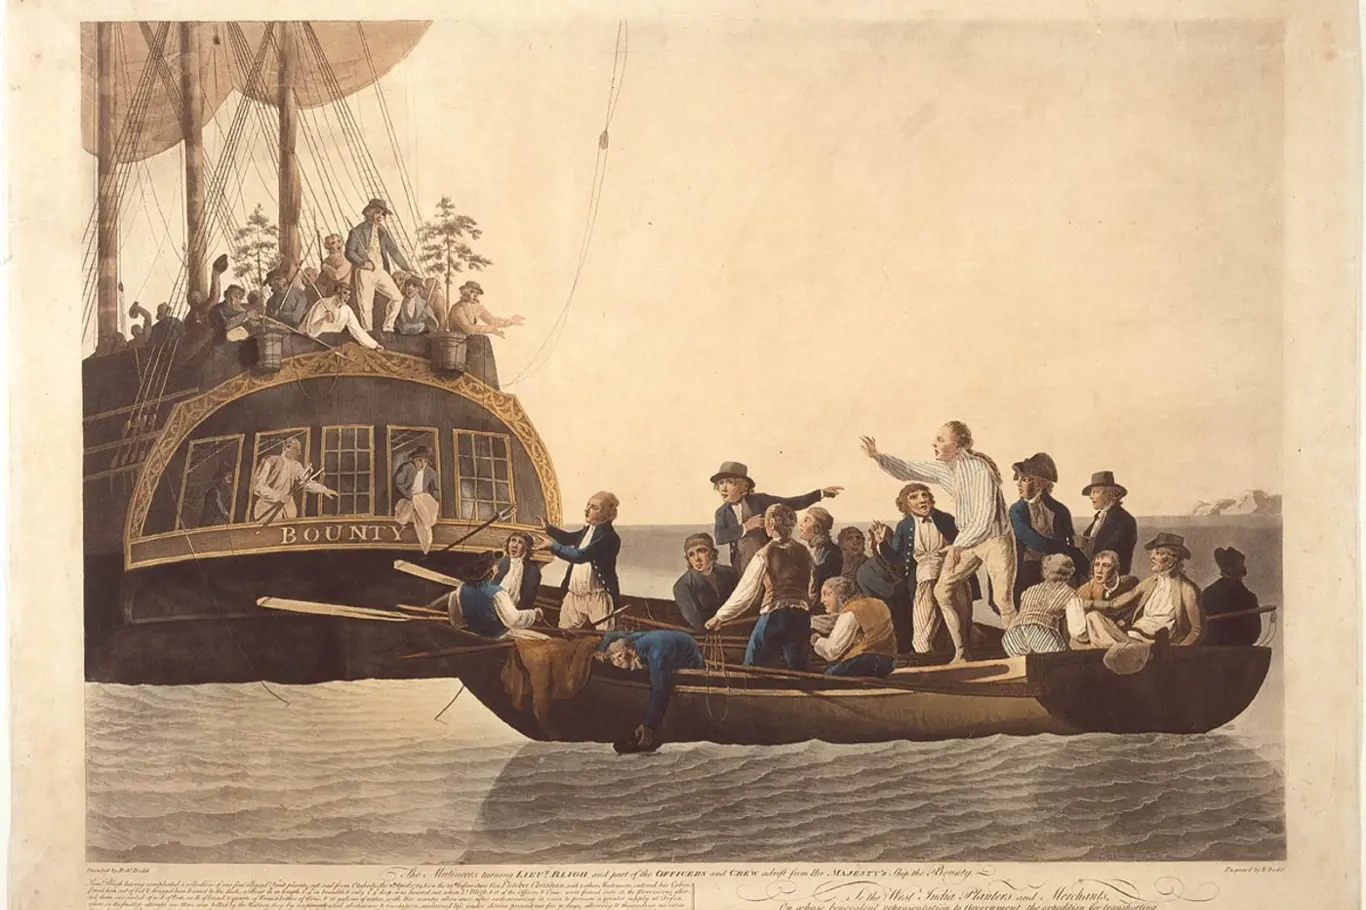 Vysazení kapitána Blighe a 18 členů posádky do člunu na otevřené moře. Muž stojící nejvýš na palubě lodi je zřejmě vůdce vzpoury Fletcher Christian